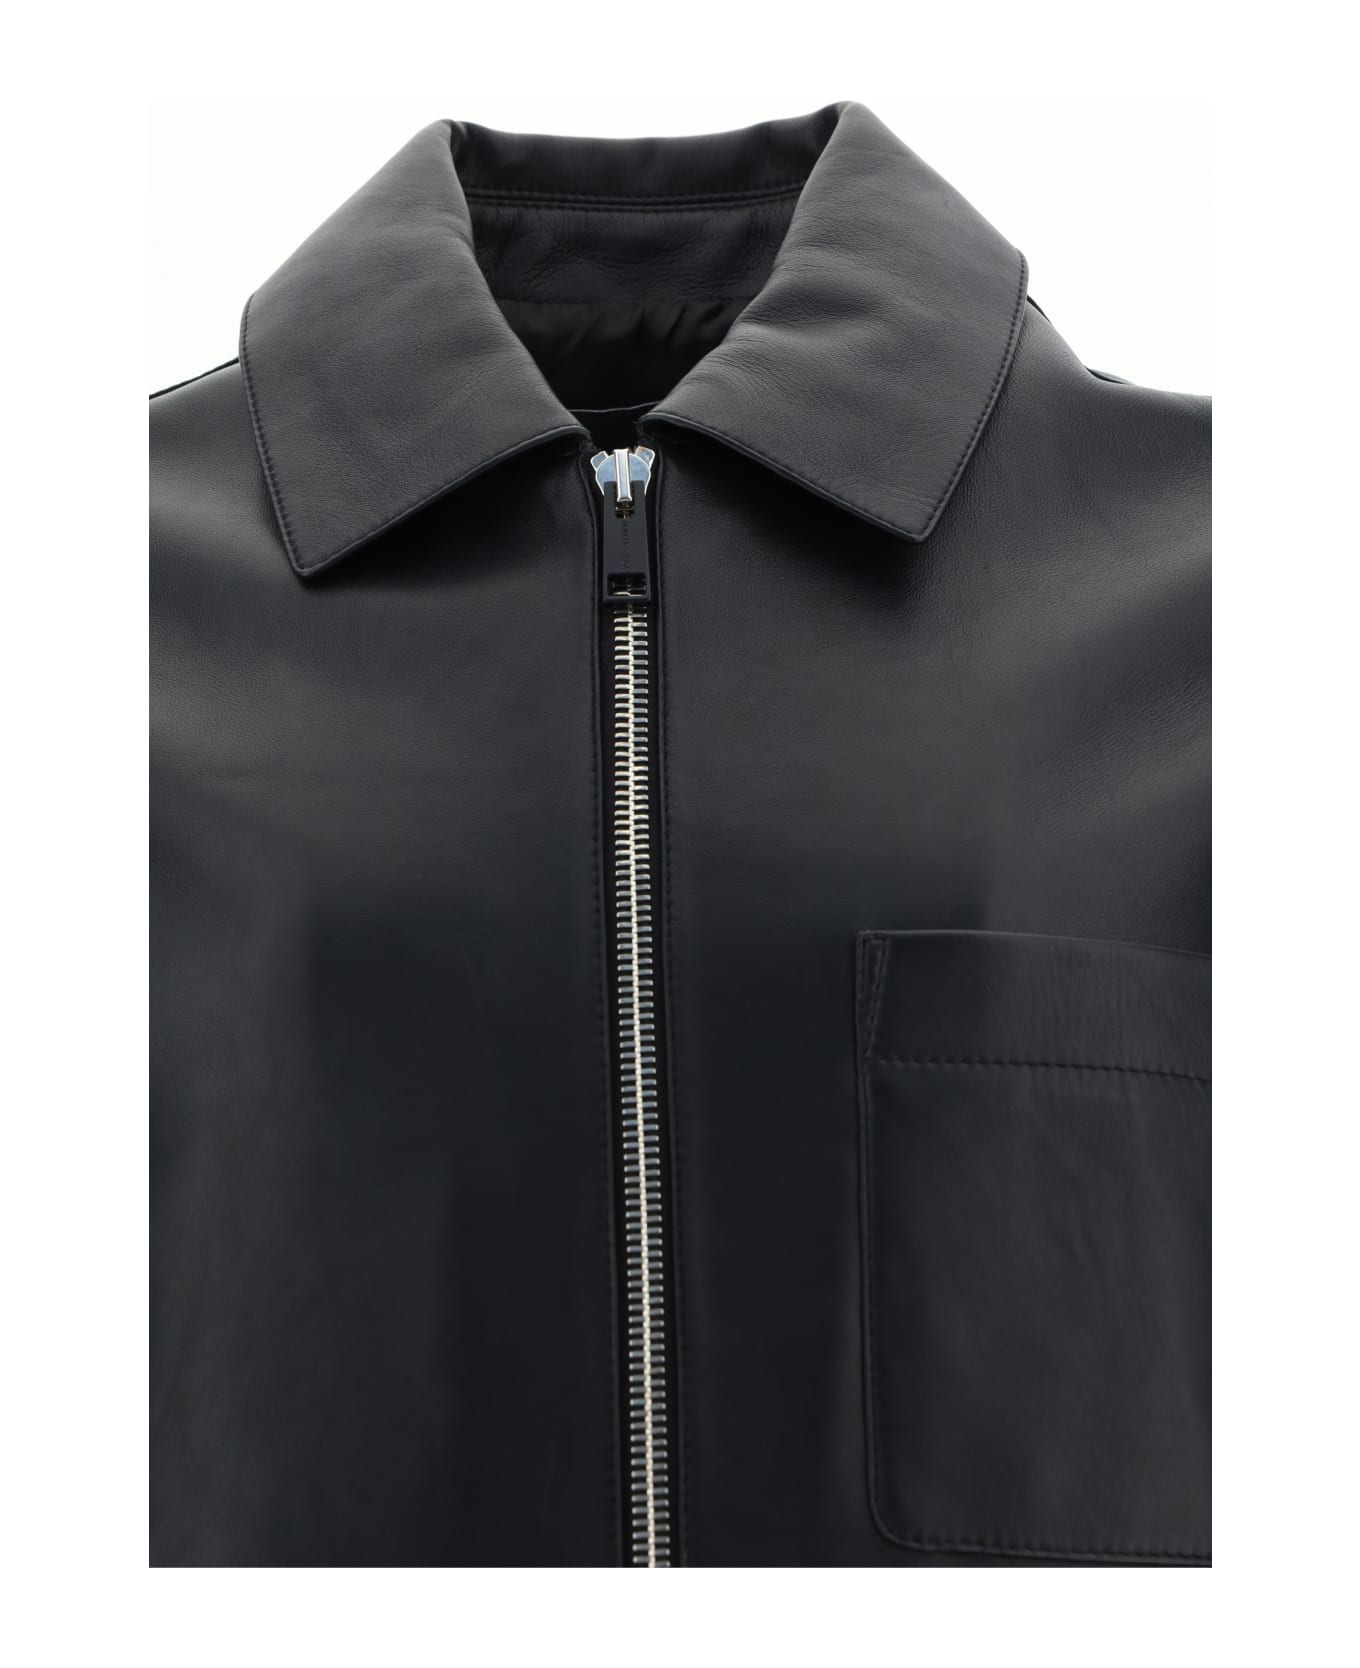 Yves Salomon Leather Jacket - Black